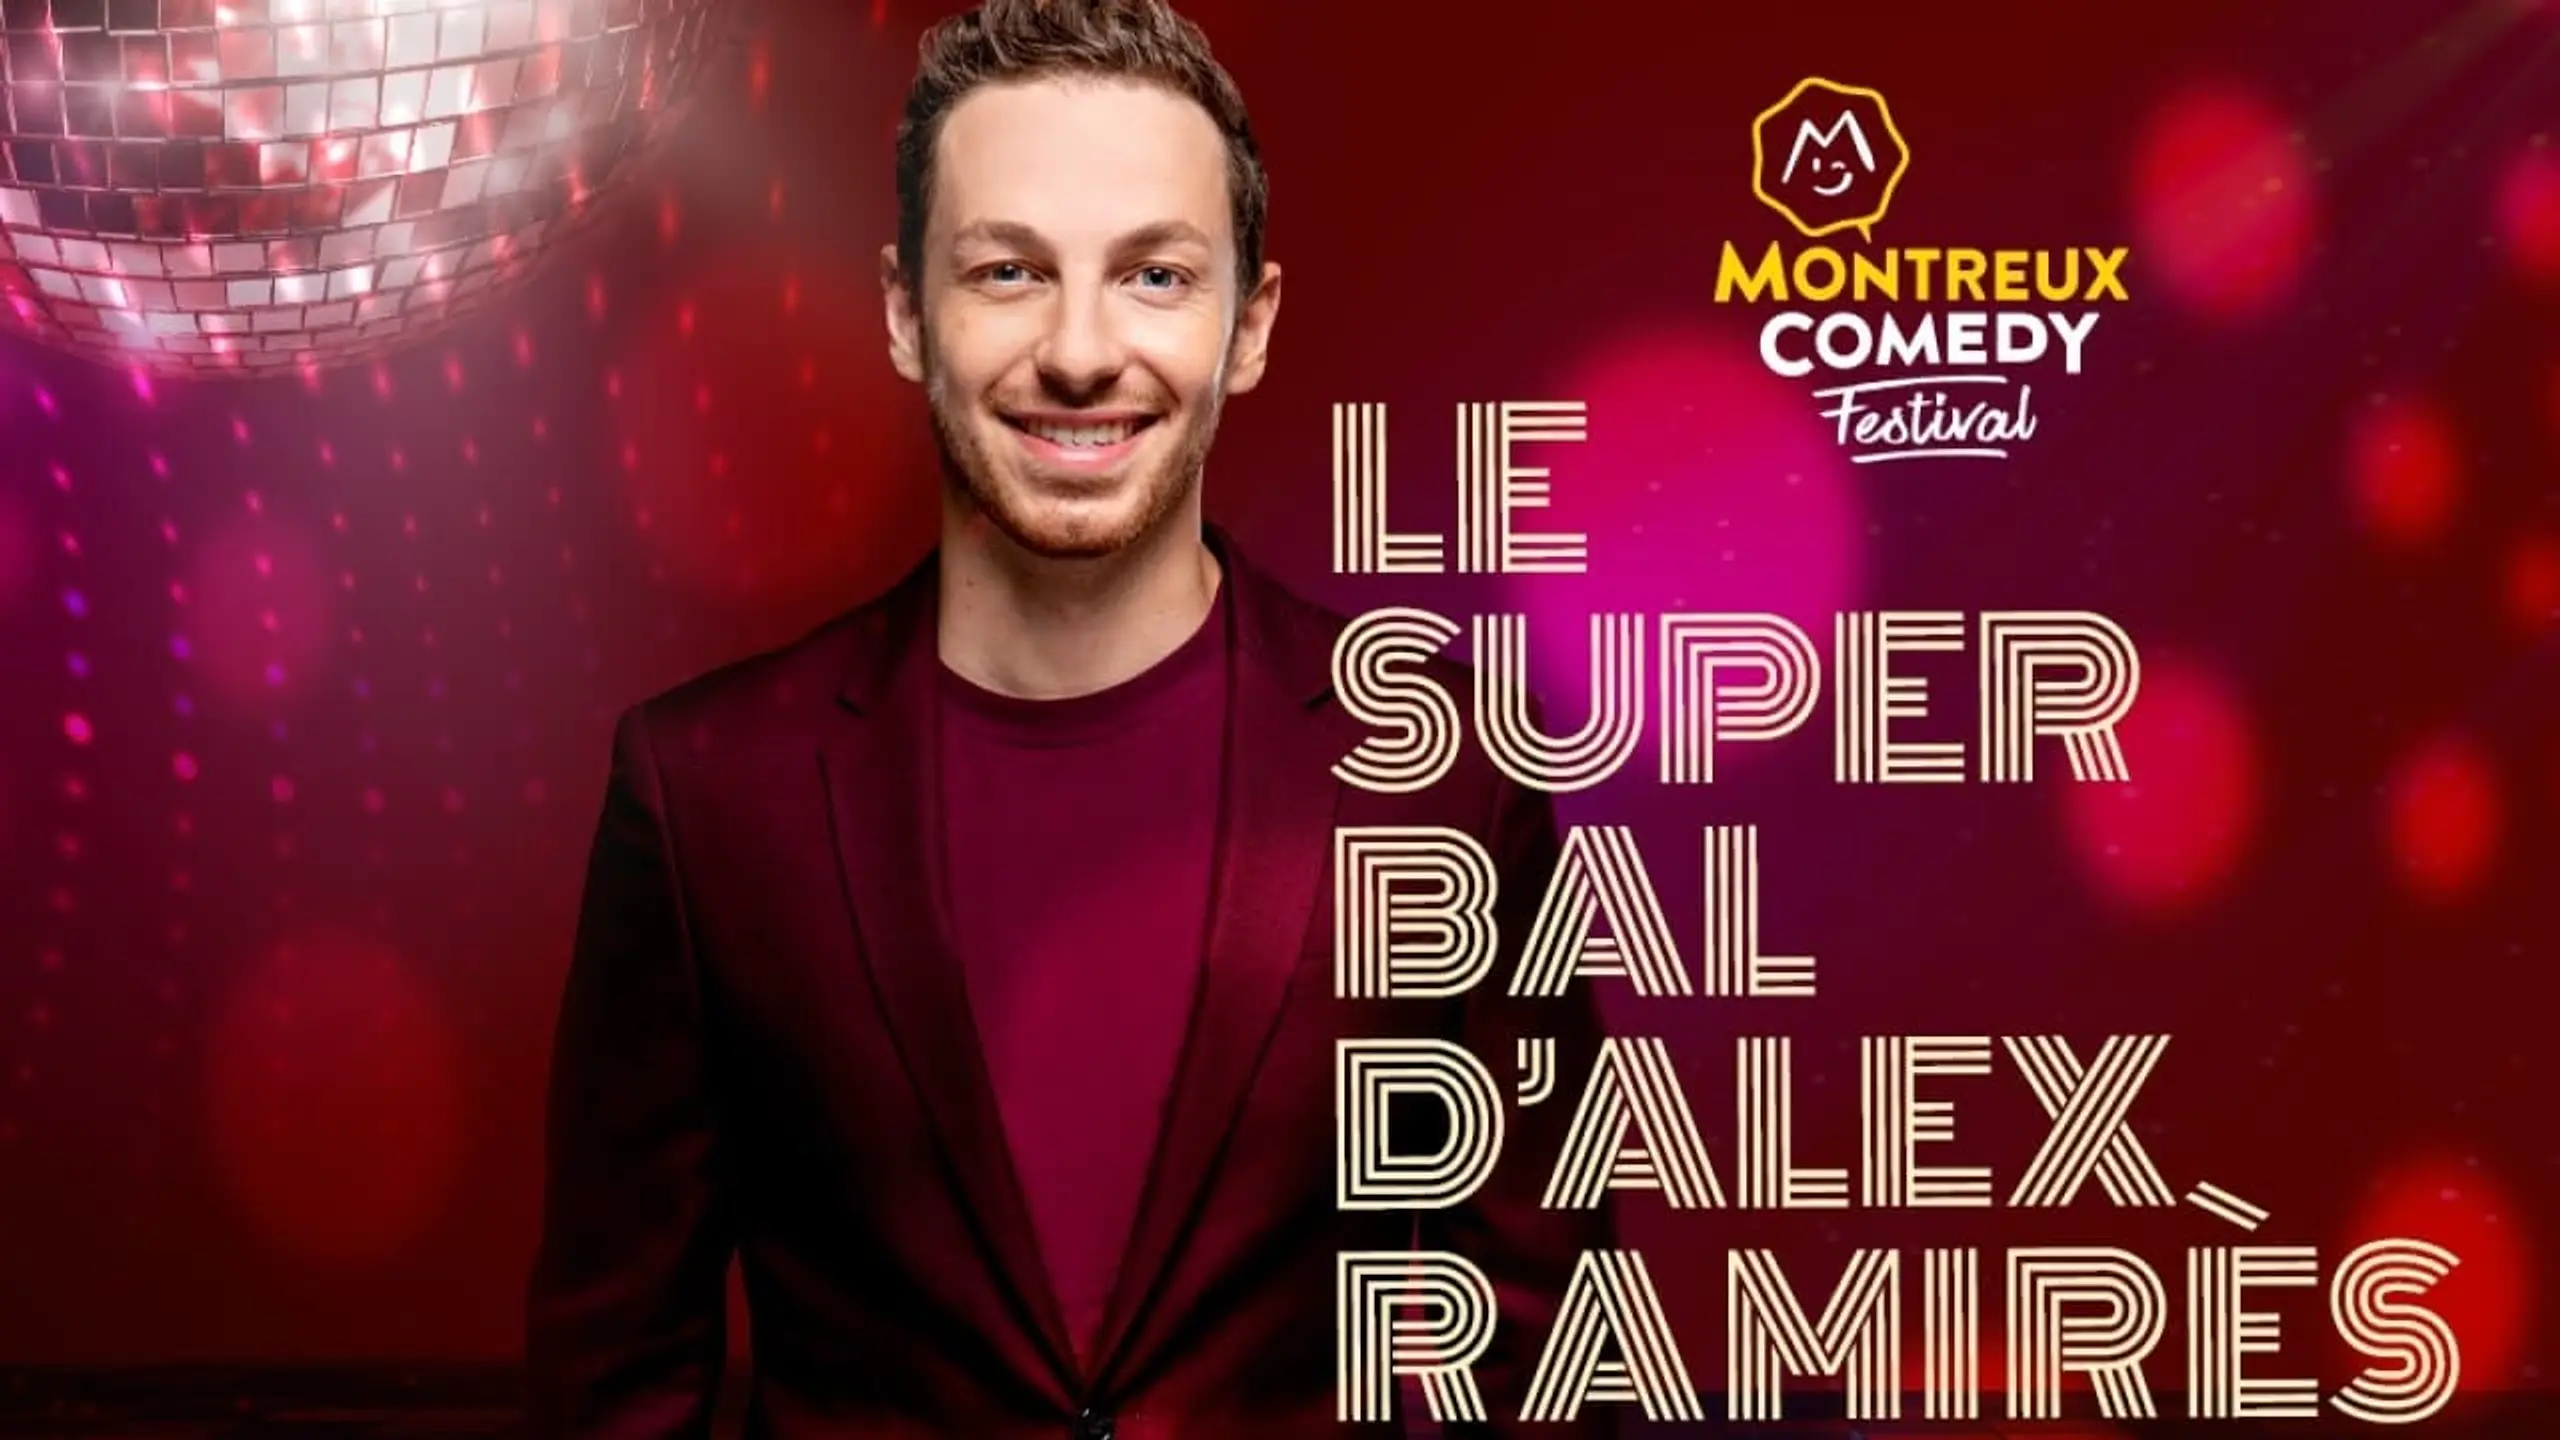 Montreux Comedy Festival - Le super bal d'Alex Ramirès